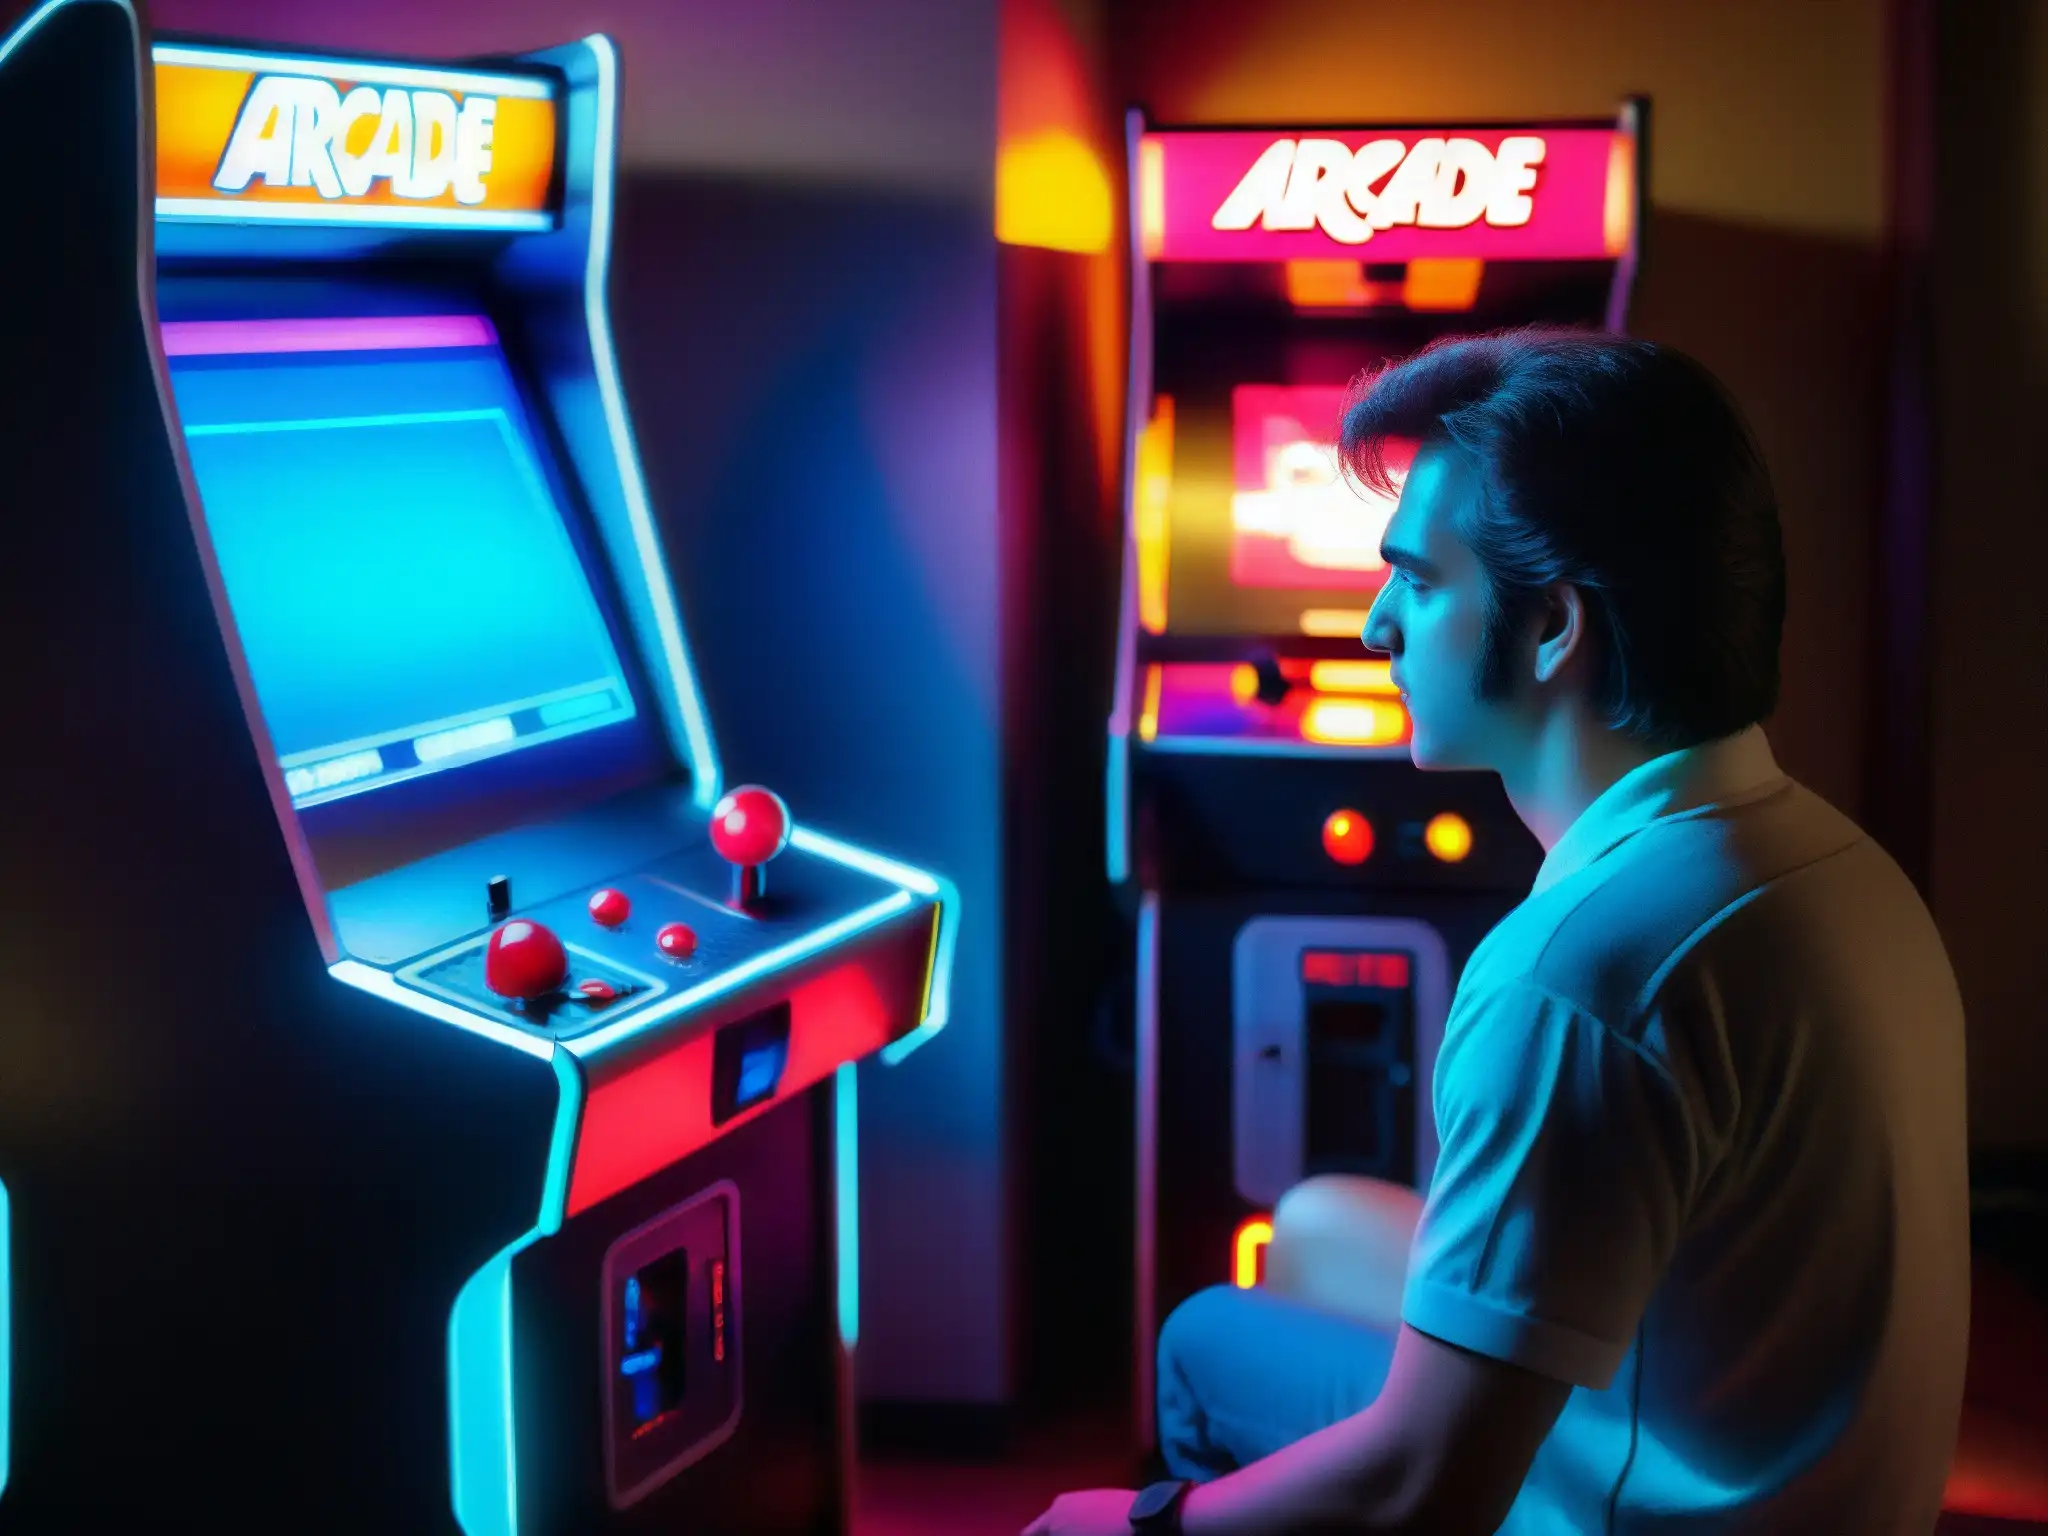 Un jugador se sumerge en el enigmático mundo de Polybius en una sala de arcade de los 80, reflejando nostalgia y misterio